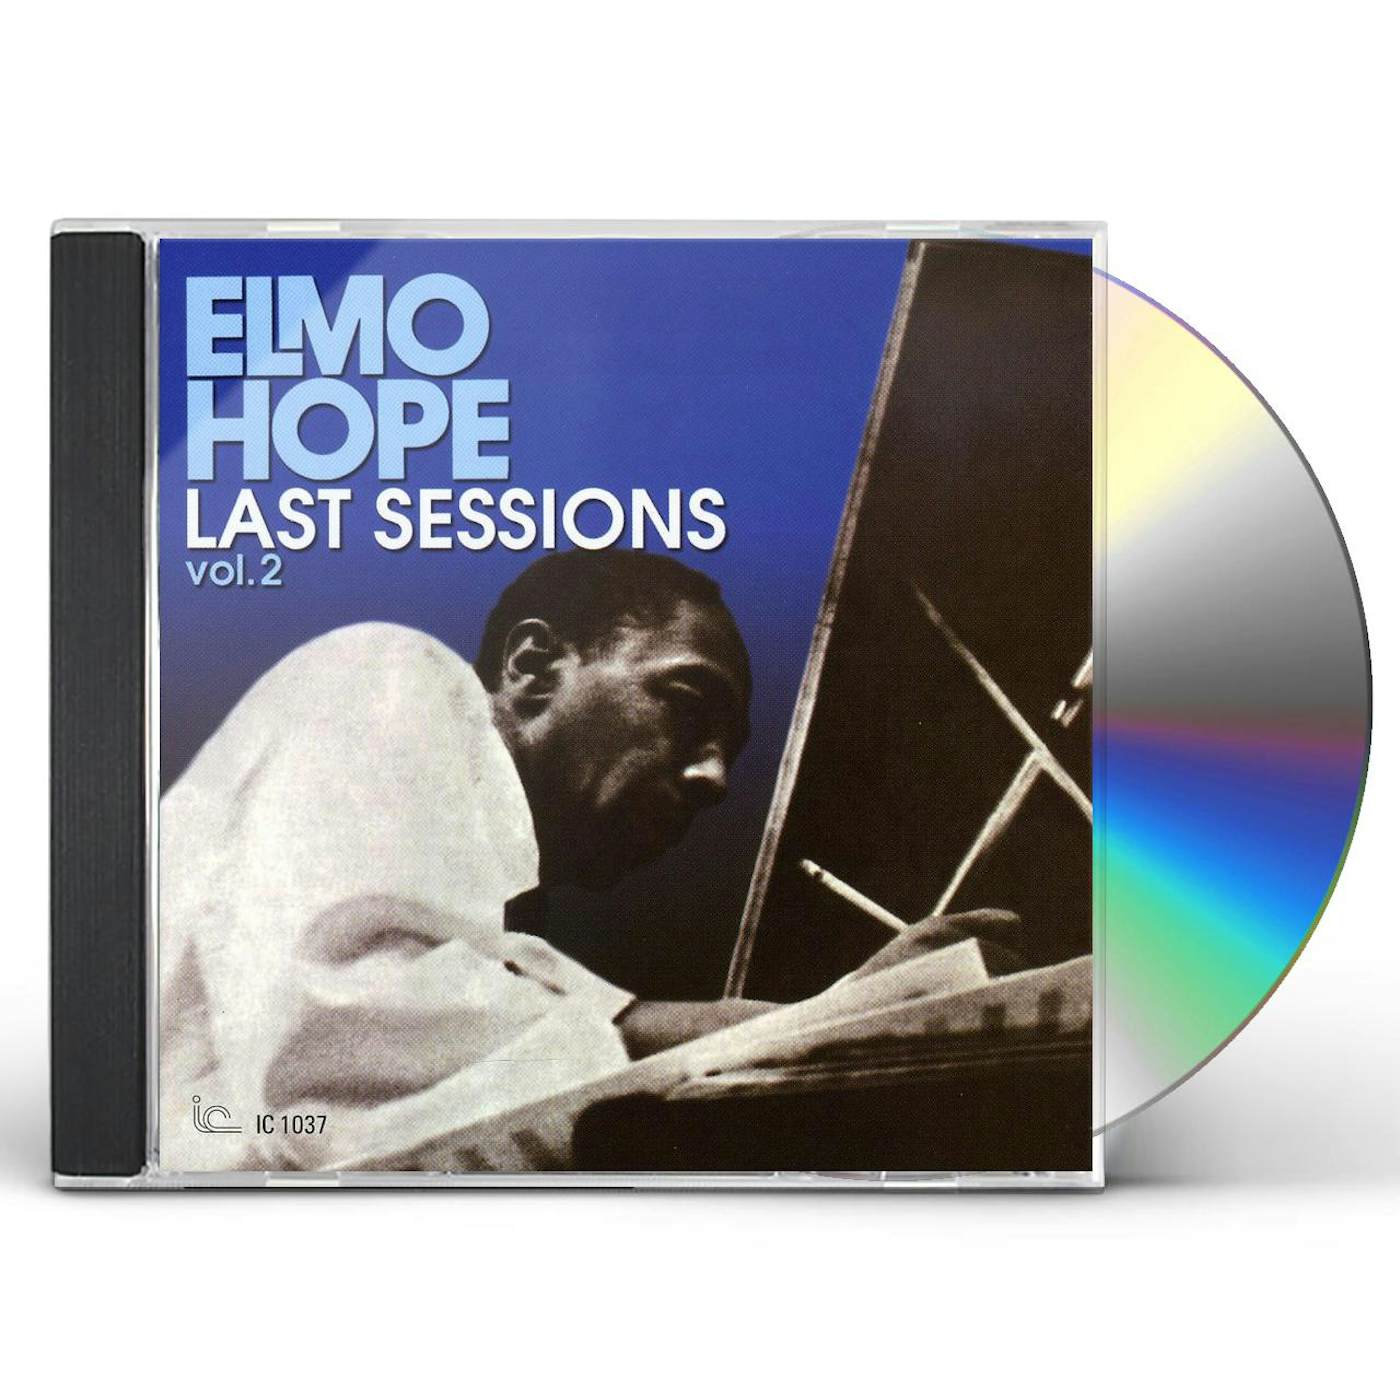 Elmo Hope LAST SESSIONS 2 CD